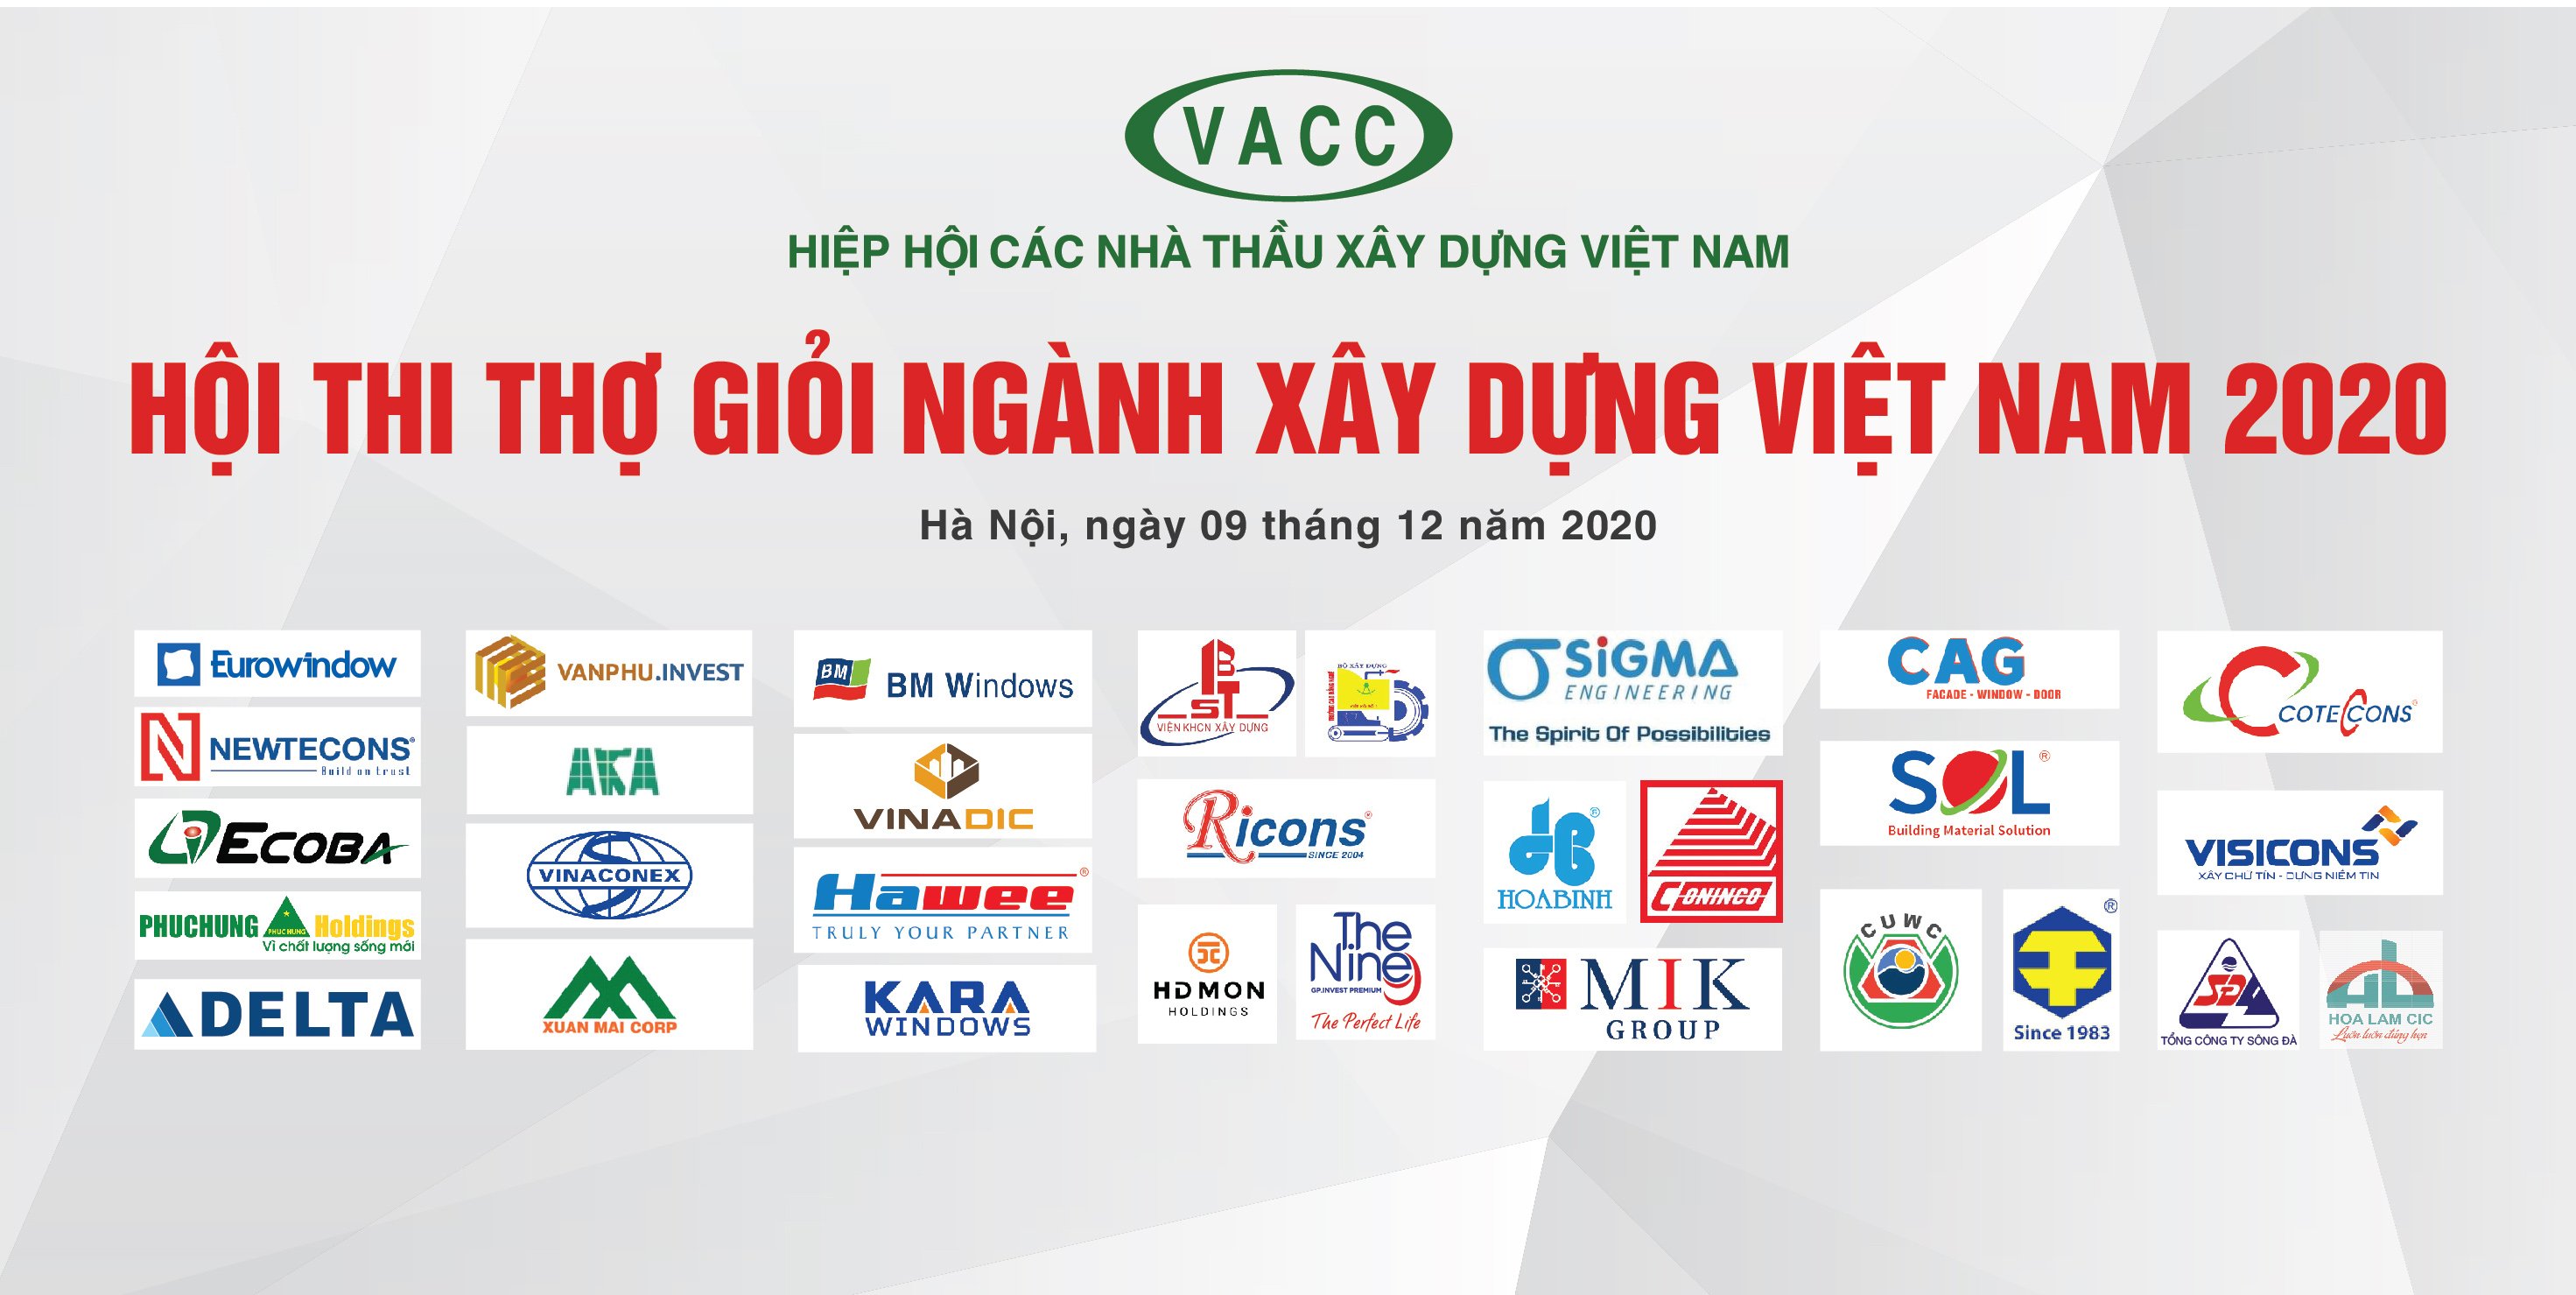 Trung tâm Thí nghiệm & Kiểm định công trình tham gia làm giám khảo Hội thi thợ giỏi ngành Xây dựng Việt Nam 20